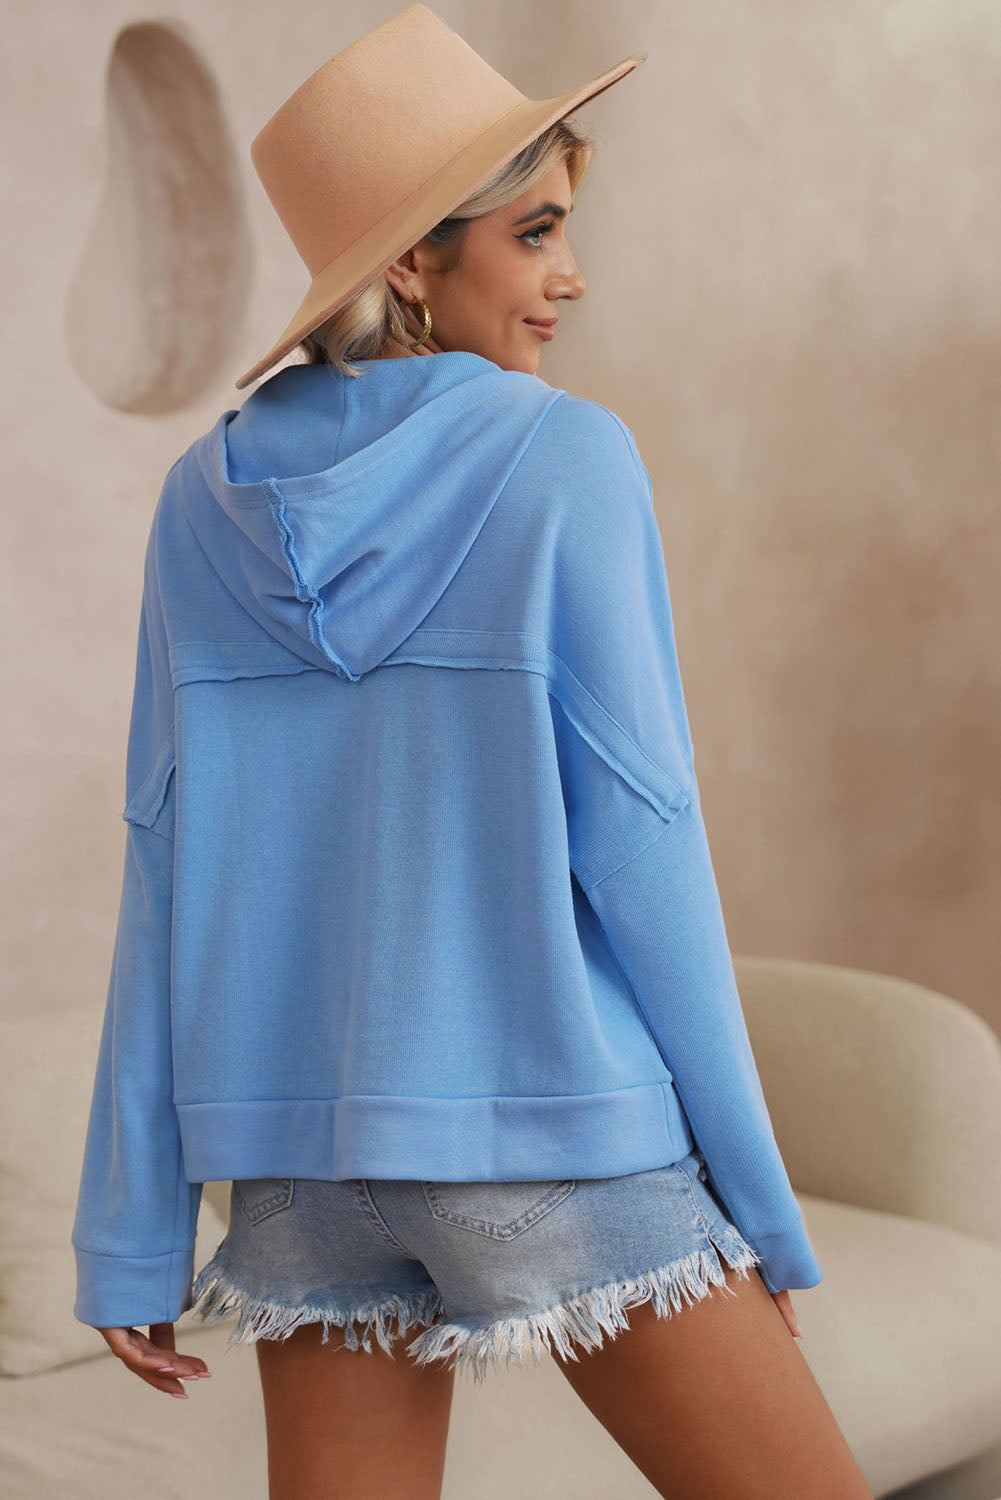 Casual Drop-Shoulder hoodies for women